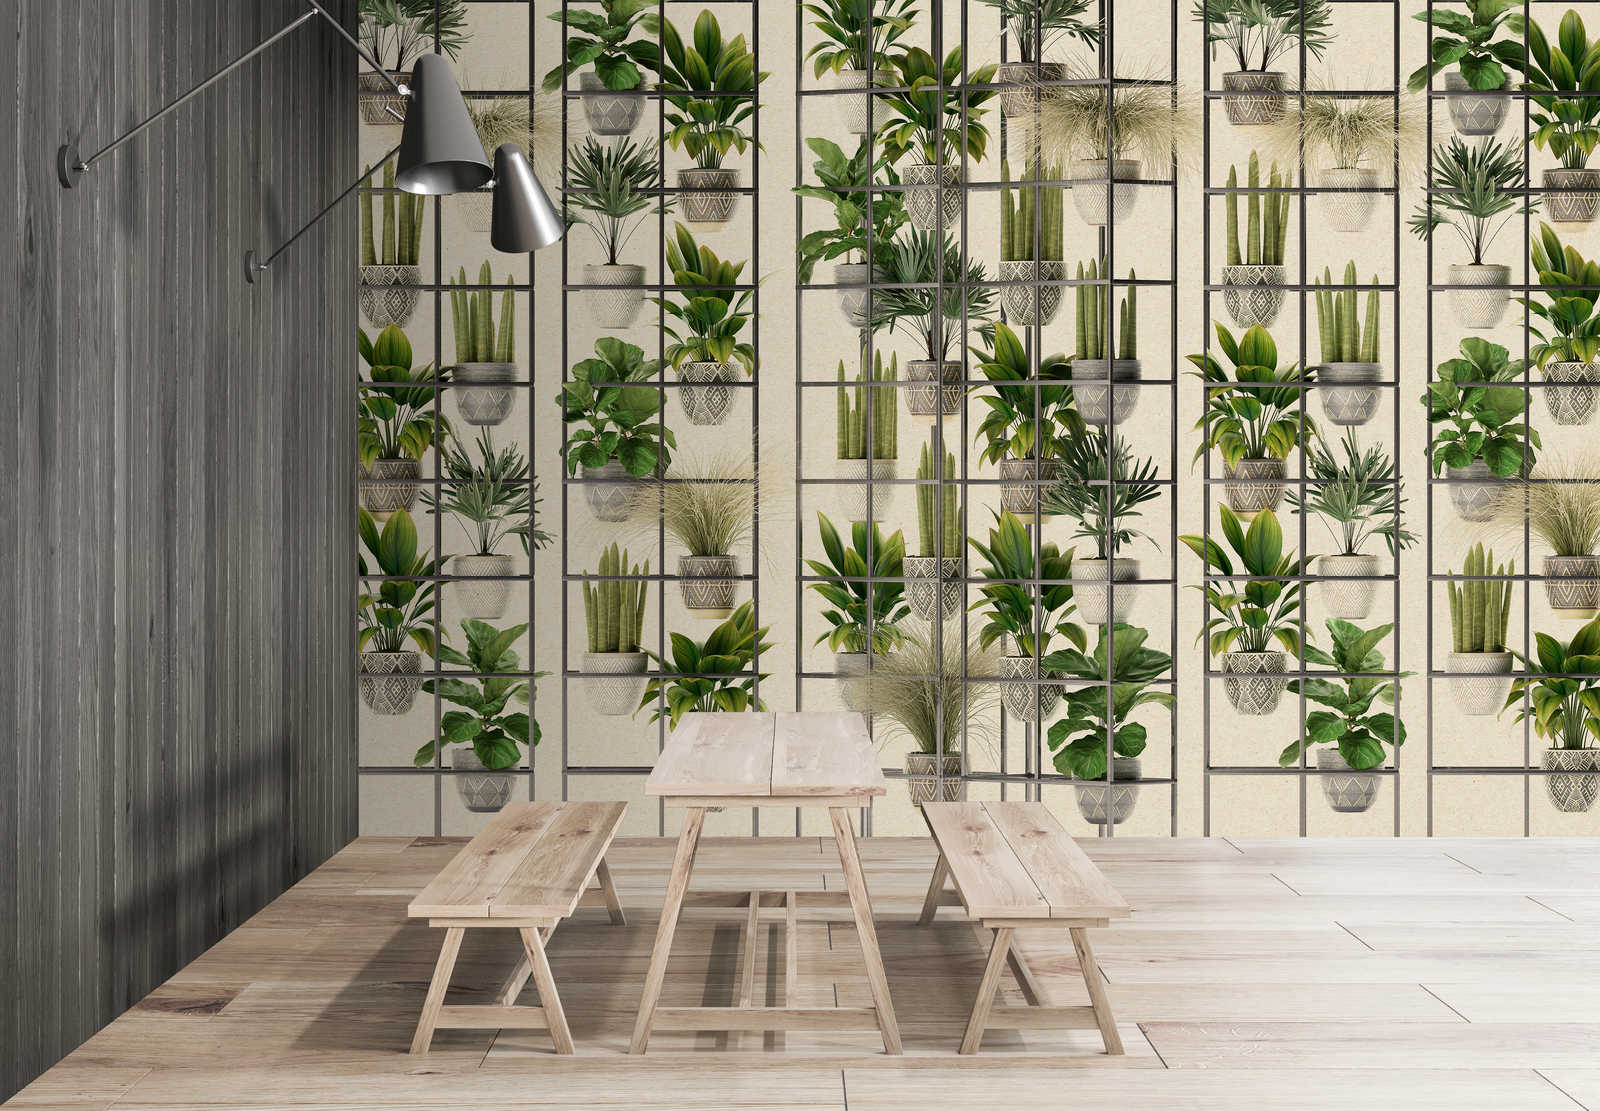             Plant Shop 2 - Mural moderno de plantas en verde y gris
        